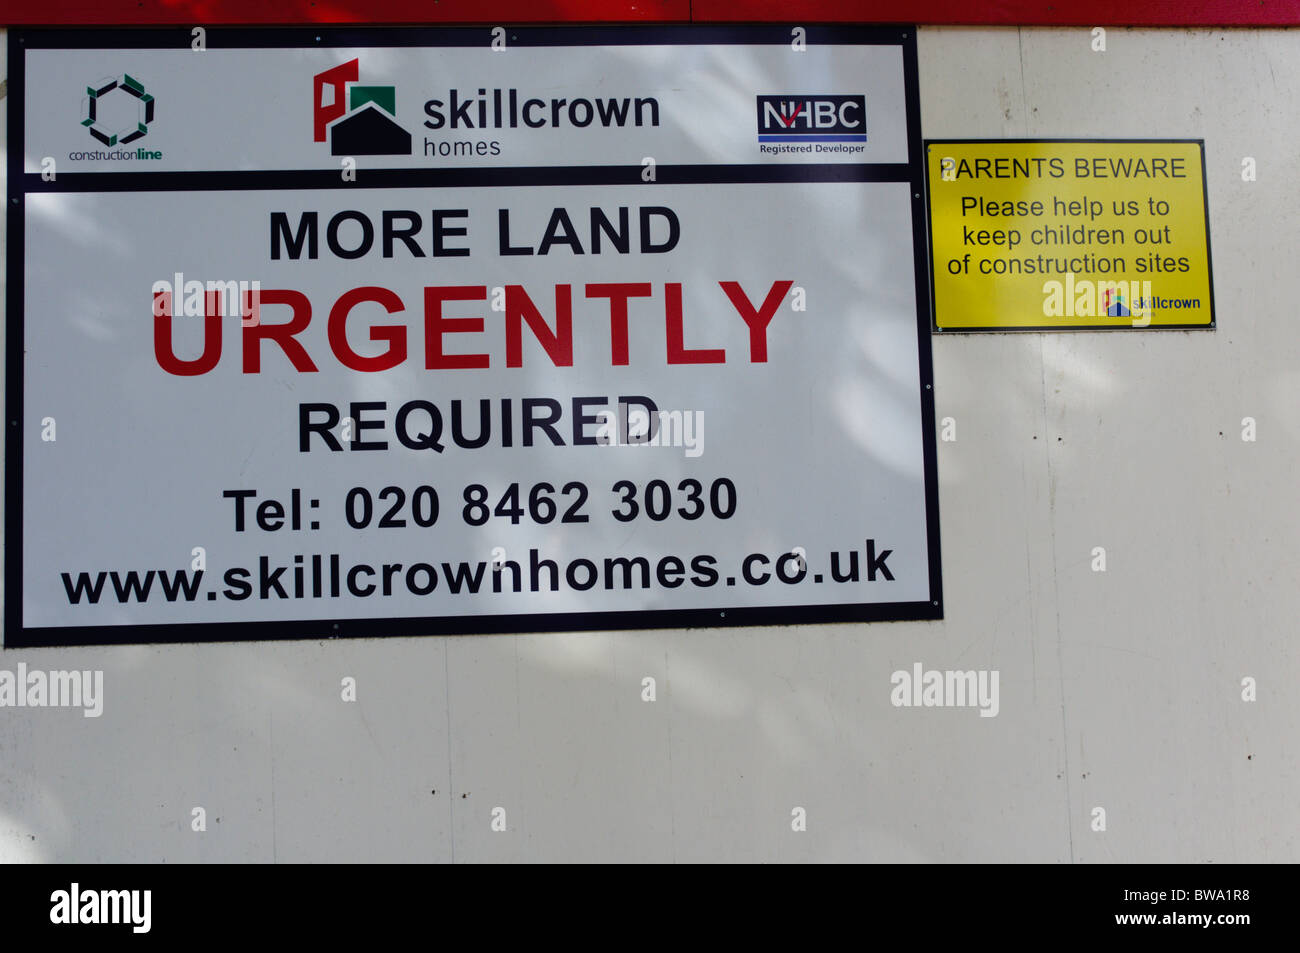 Melden Sie sagen "Mehr Land dringend erforderlich" auf einer Website Horten rund um ein Haus mit dem Namen und Logo von Skillcrown Häusern. Stockfoto